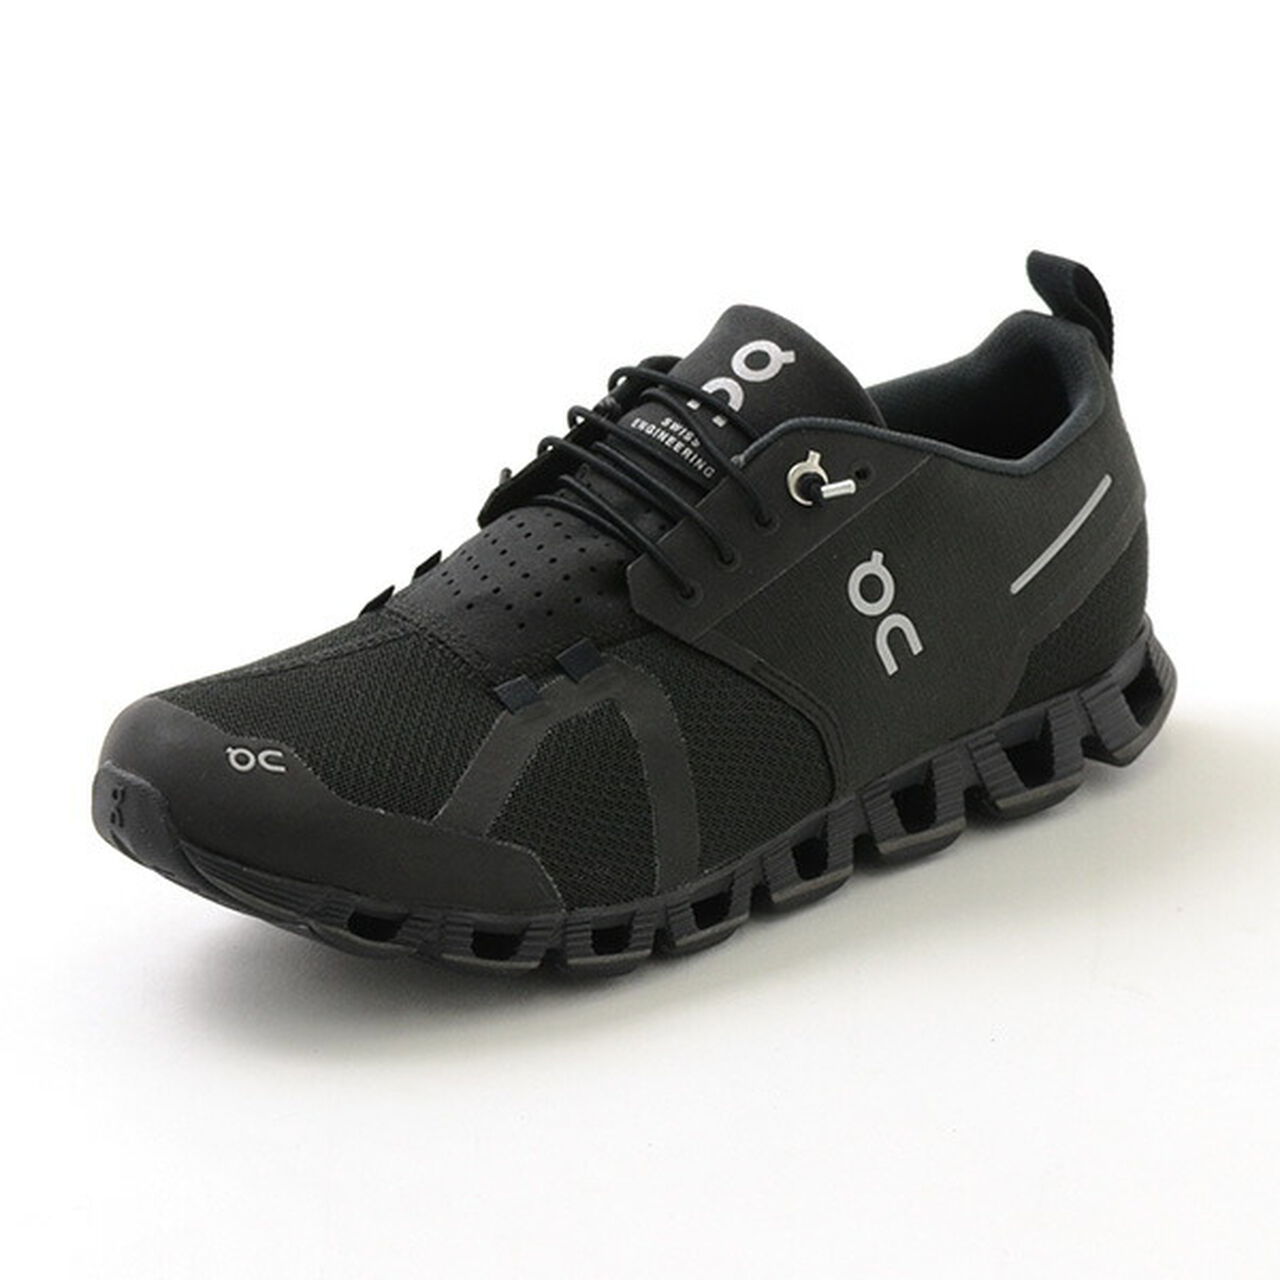 Cloud 5 Waterproof Sneakers,Black_Lunar, large image number 0